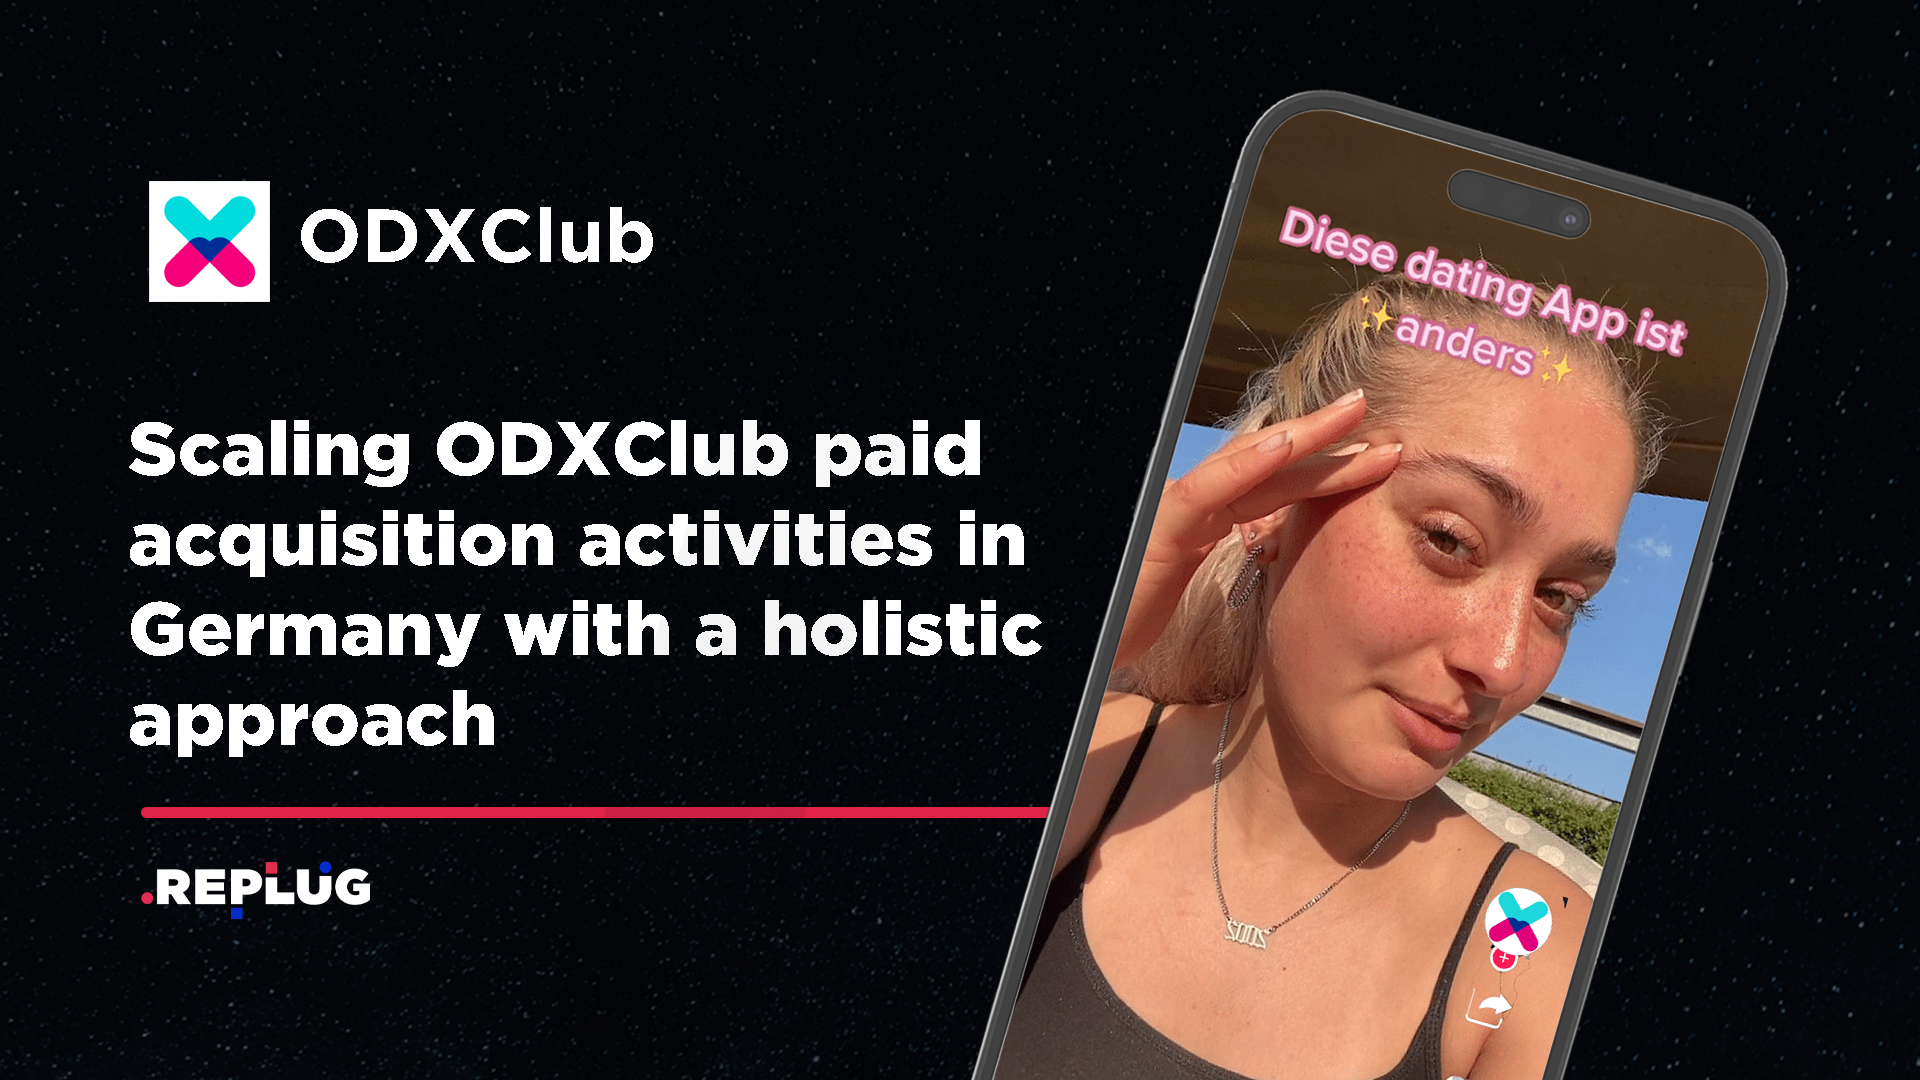 ODXClub